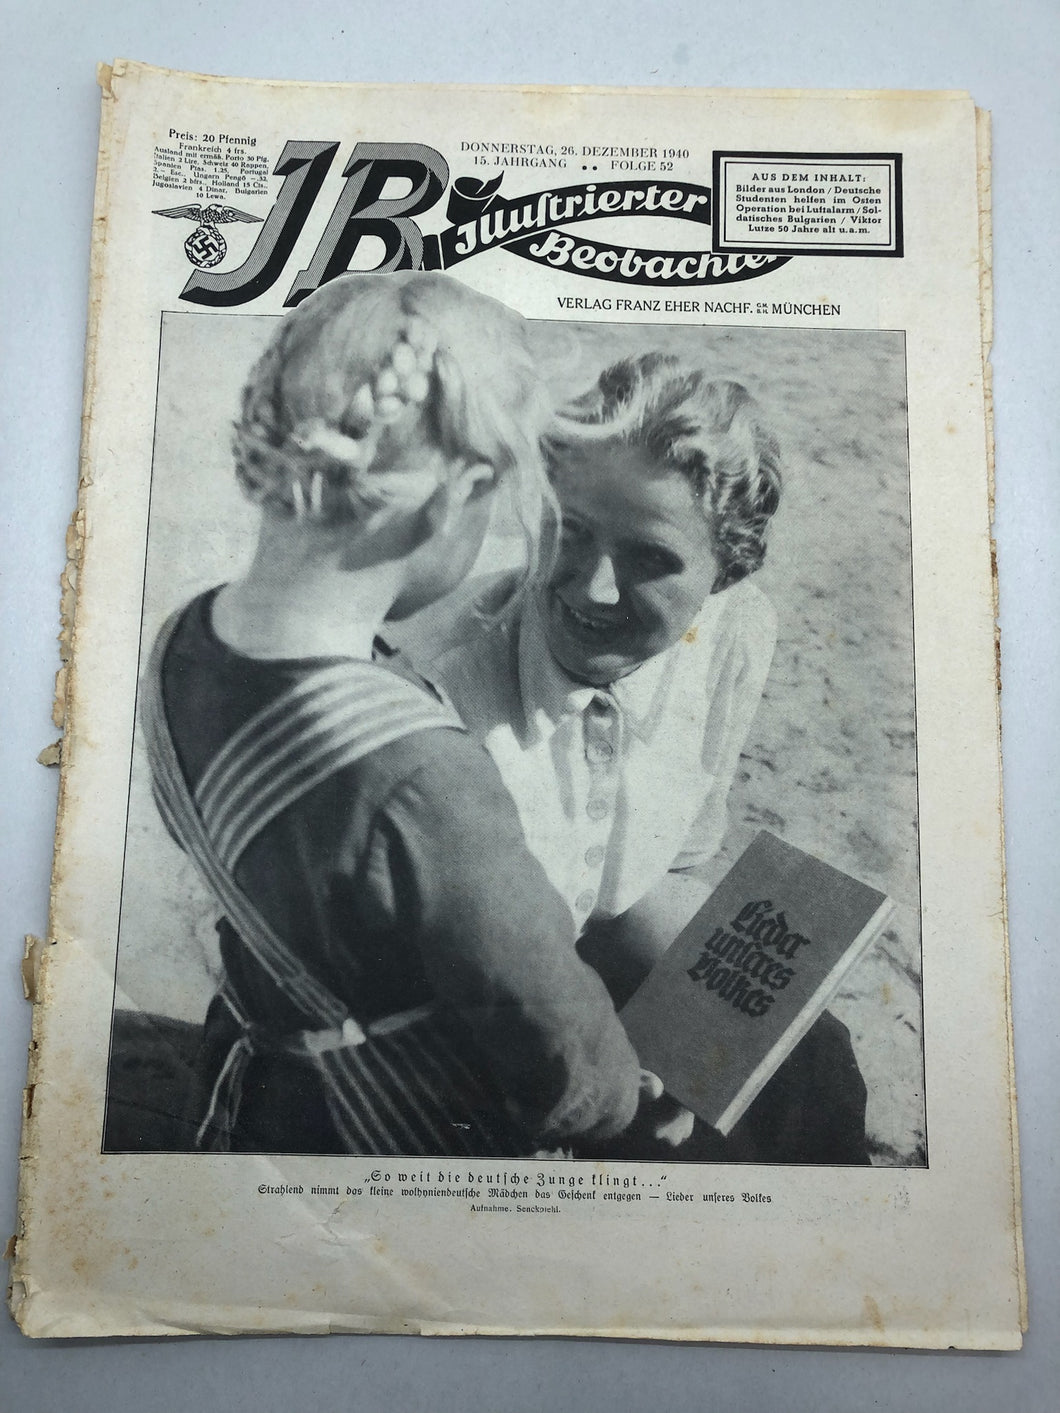 JB Juustrierter Beobachter NSDAP Magazine Original WW2 German - 26th December 1940